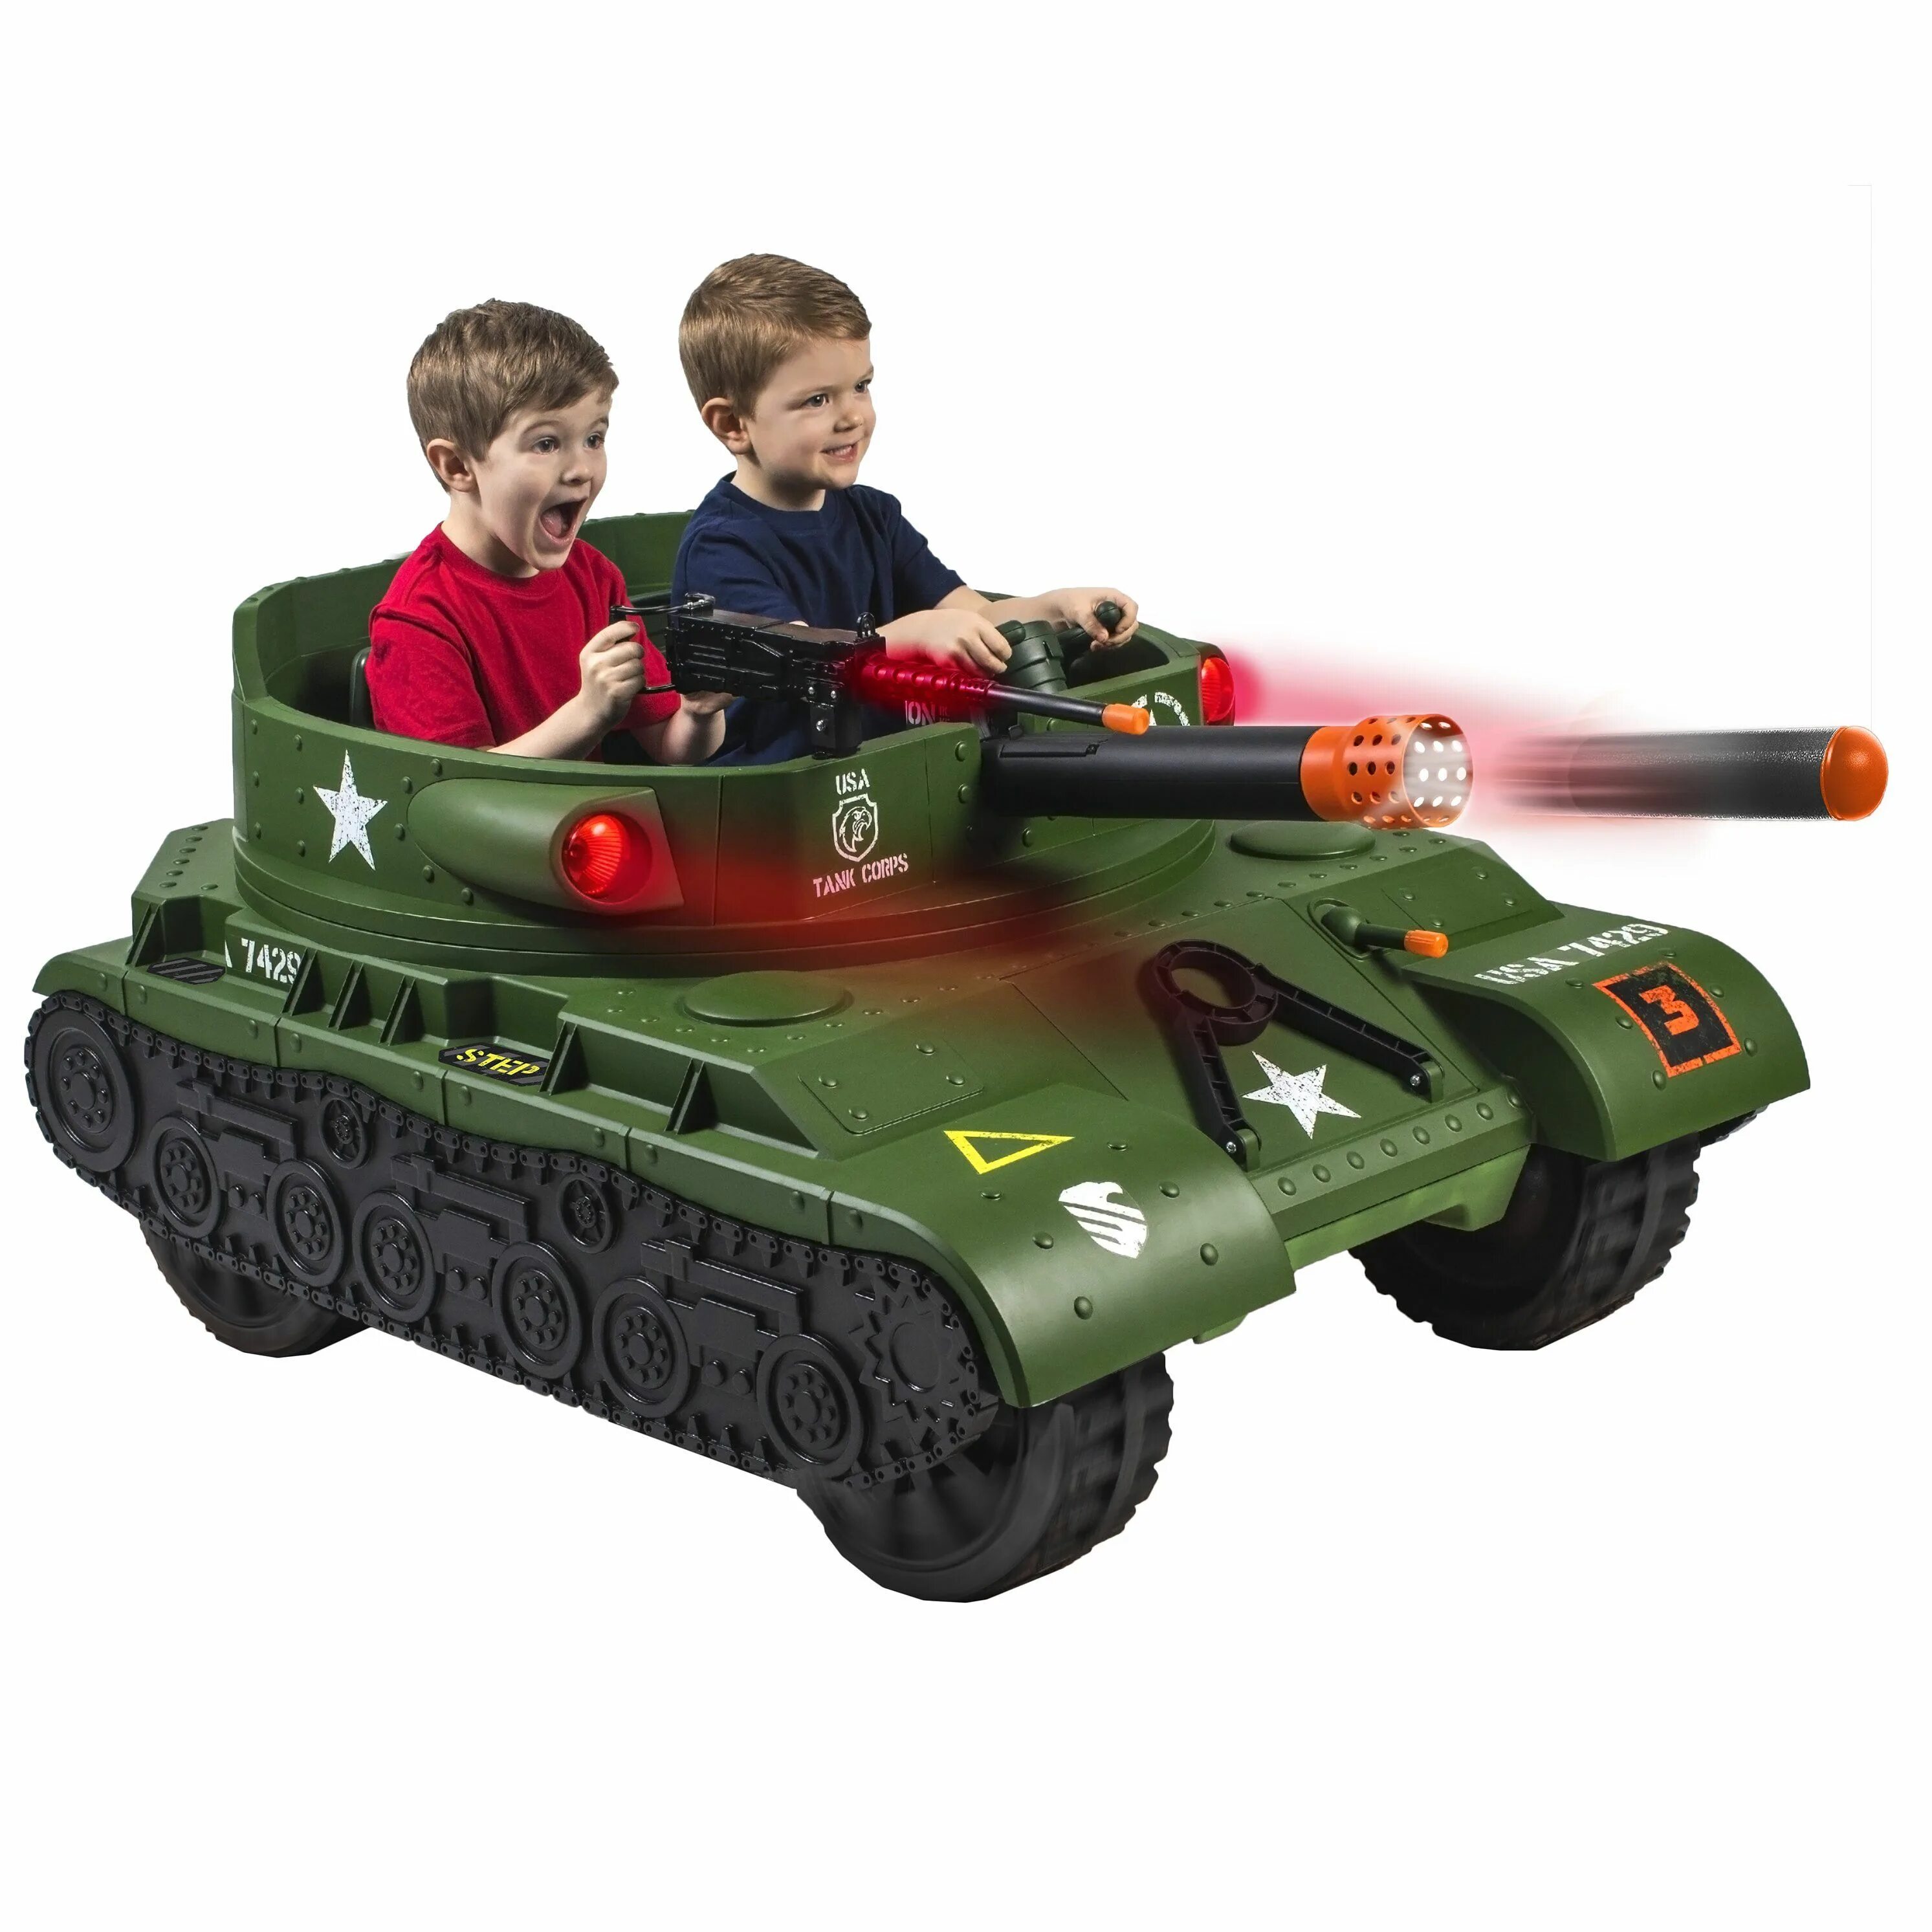 Детский электромобиль Тандер танк. Детский Громовой Электротанк. Игрушечный танк для детей. Игрушки для мальчиков 6-7 лет. Танчики и машинки